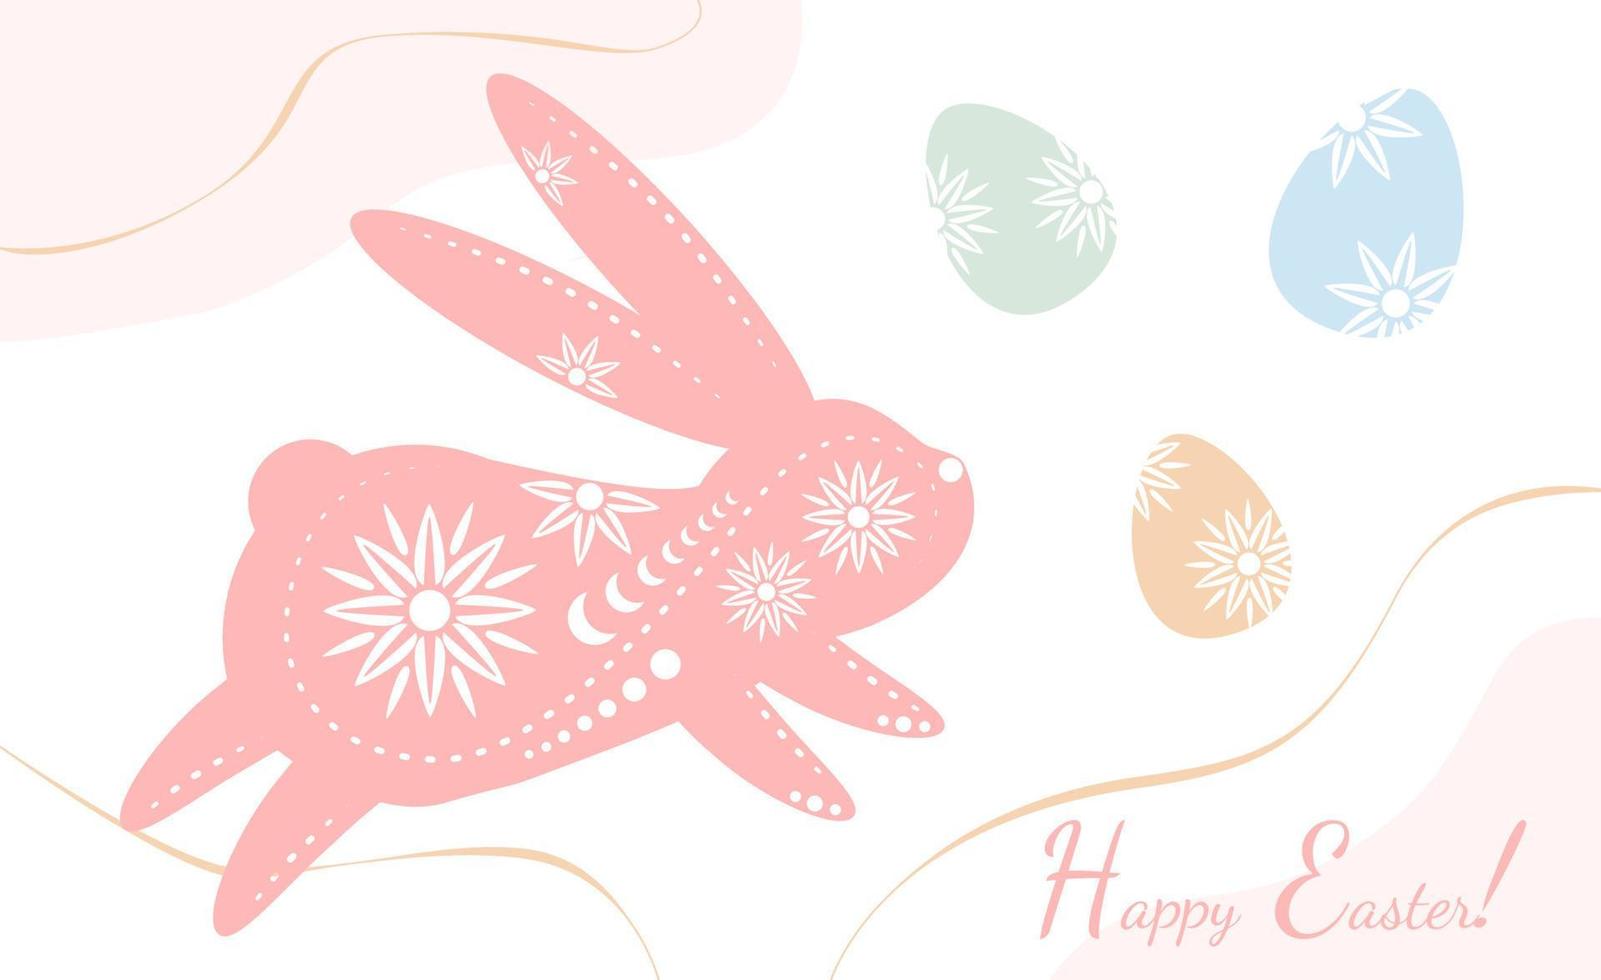 påsk Semester hälsning med dekorerad kanin silhuett med dekorerad traditionell färgad ägg, kristendomen traditionell Semester inbjudan, affisch, firande kort. vektor